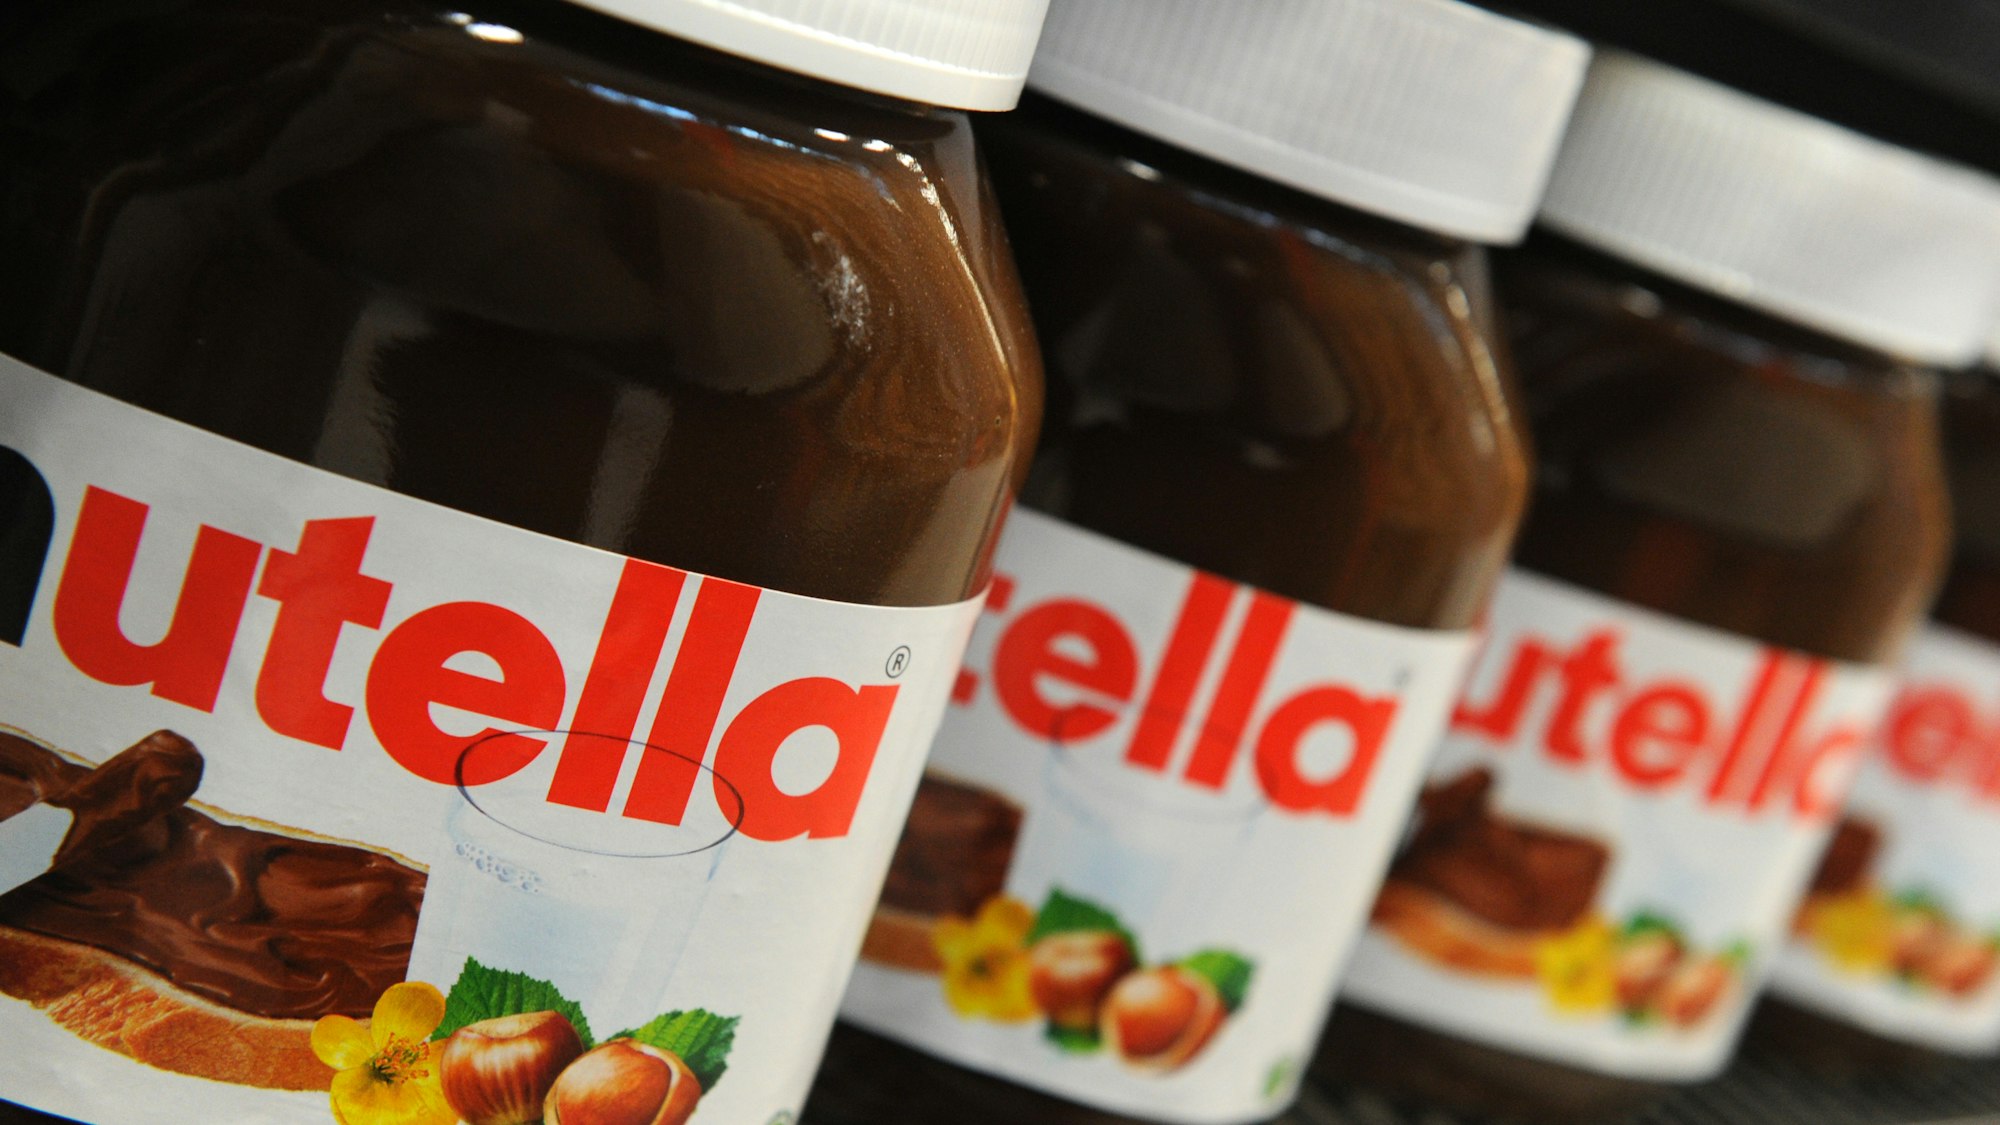 ARCHIV - Nutella-Gläser stehen am 17.11.2011 in einem Regal in einem Supermarkt in Hamburg.